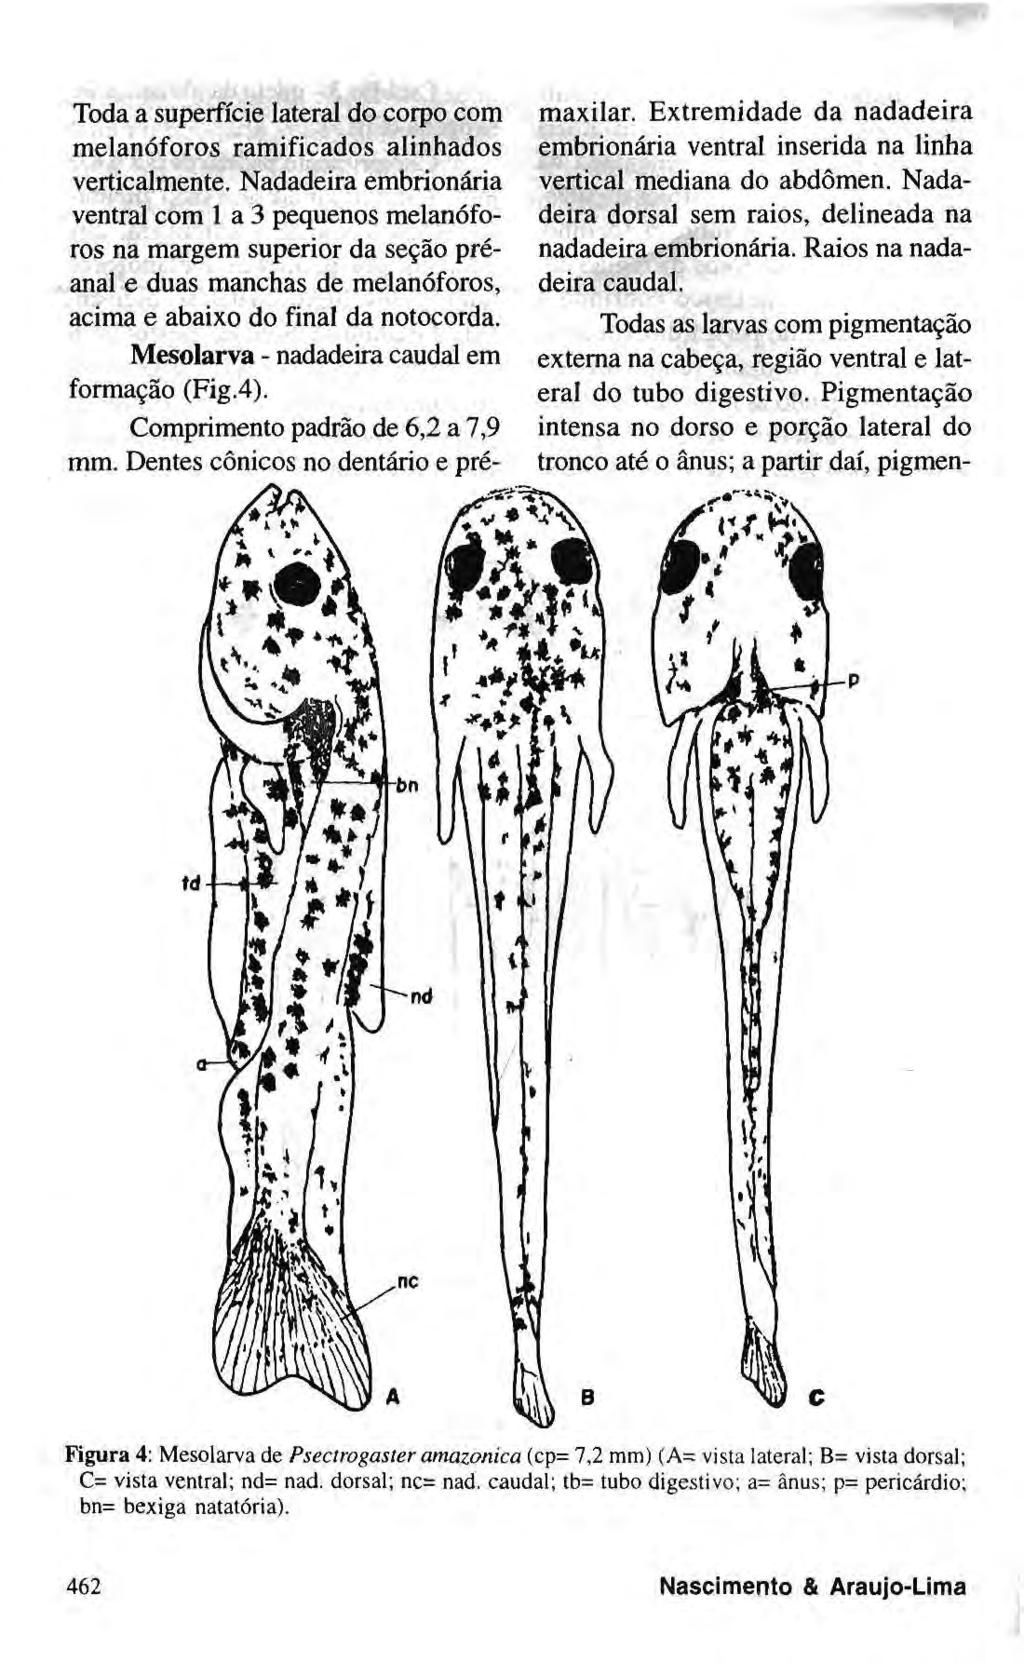 Toda a superfície lateral do corpo com melanóforos ramificados alinhados verticalmente.